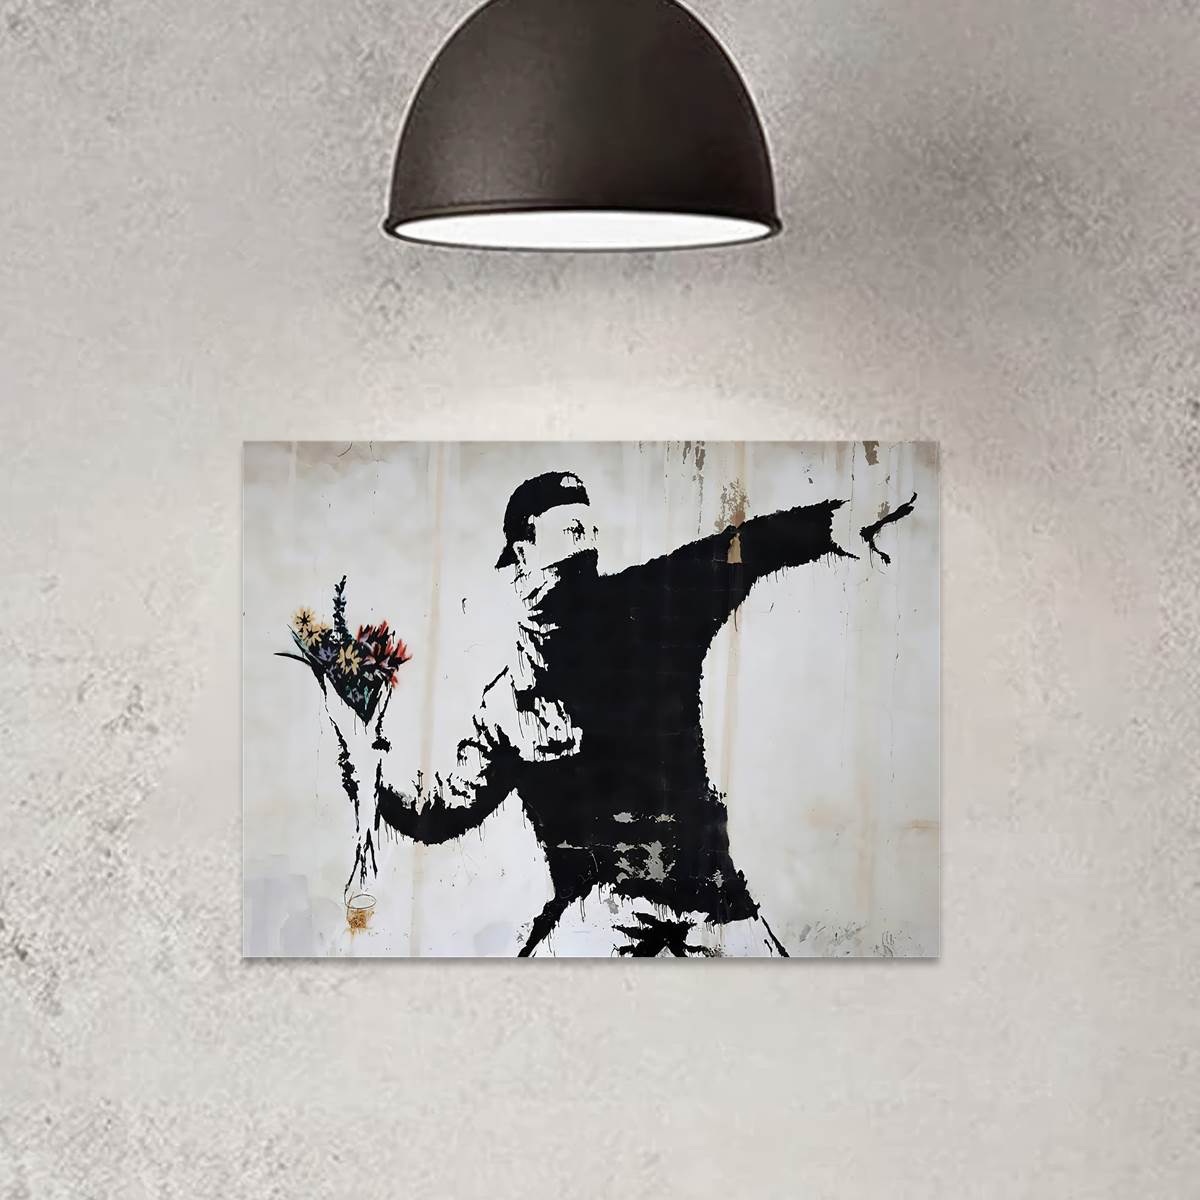 1 Pc Impression Sur Toile Affiche, Lanceur De Fleurs Par Banksy Toile  Peinture, Street Art Toile Décoration Murale, Graffiti Toile Décoration  Murale